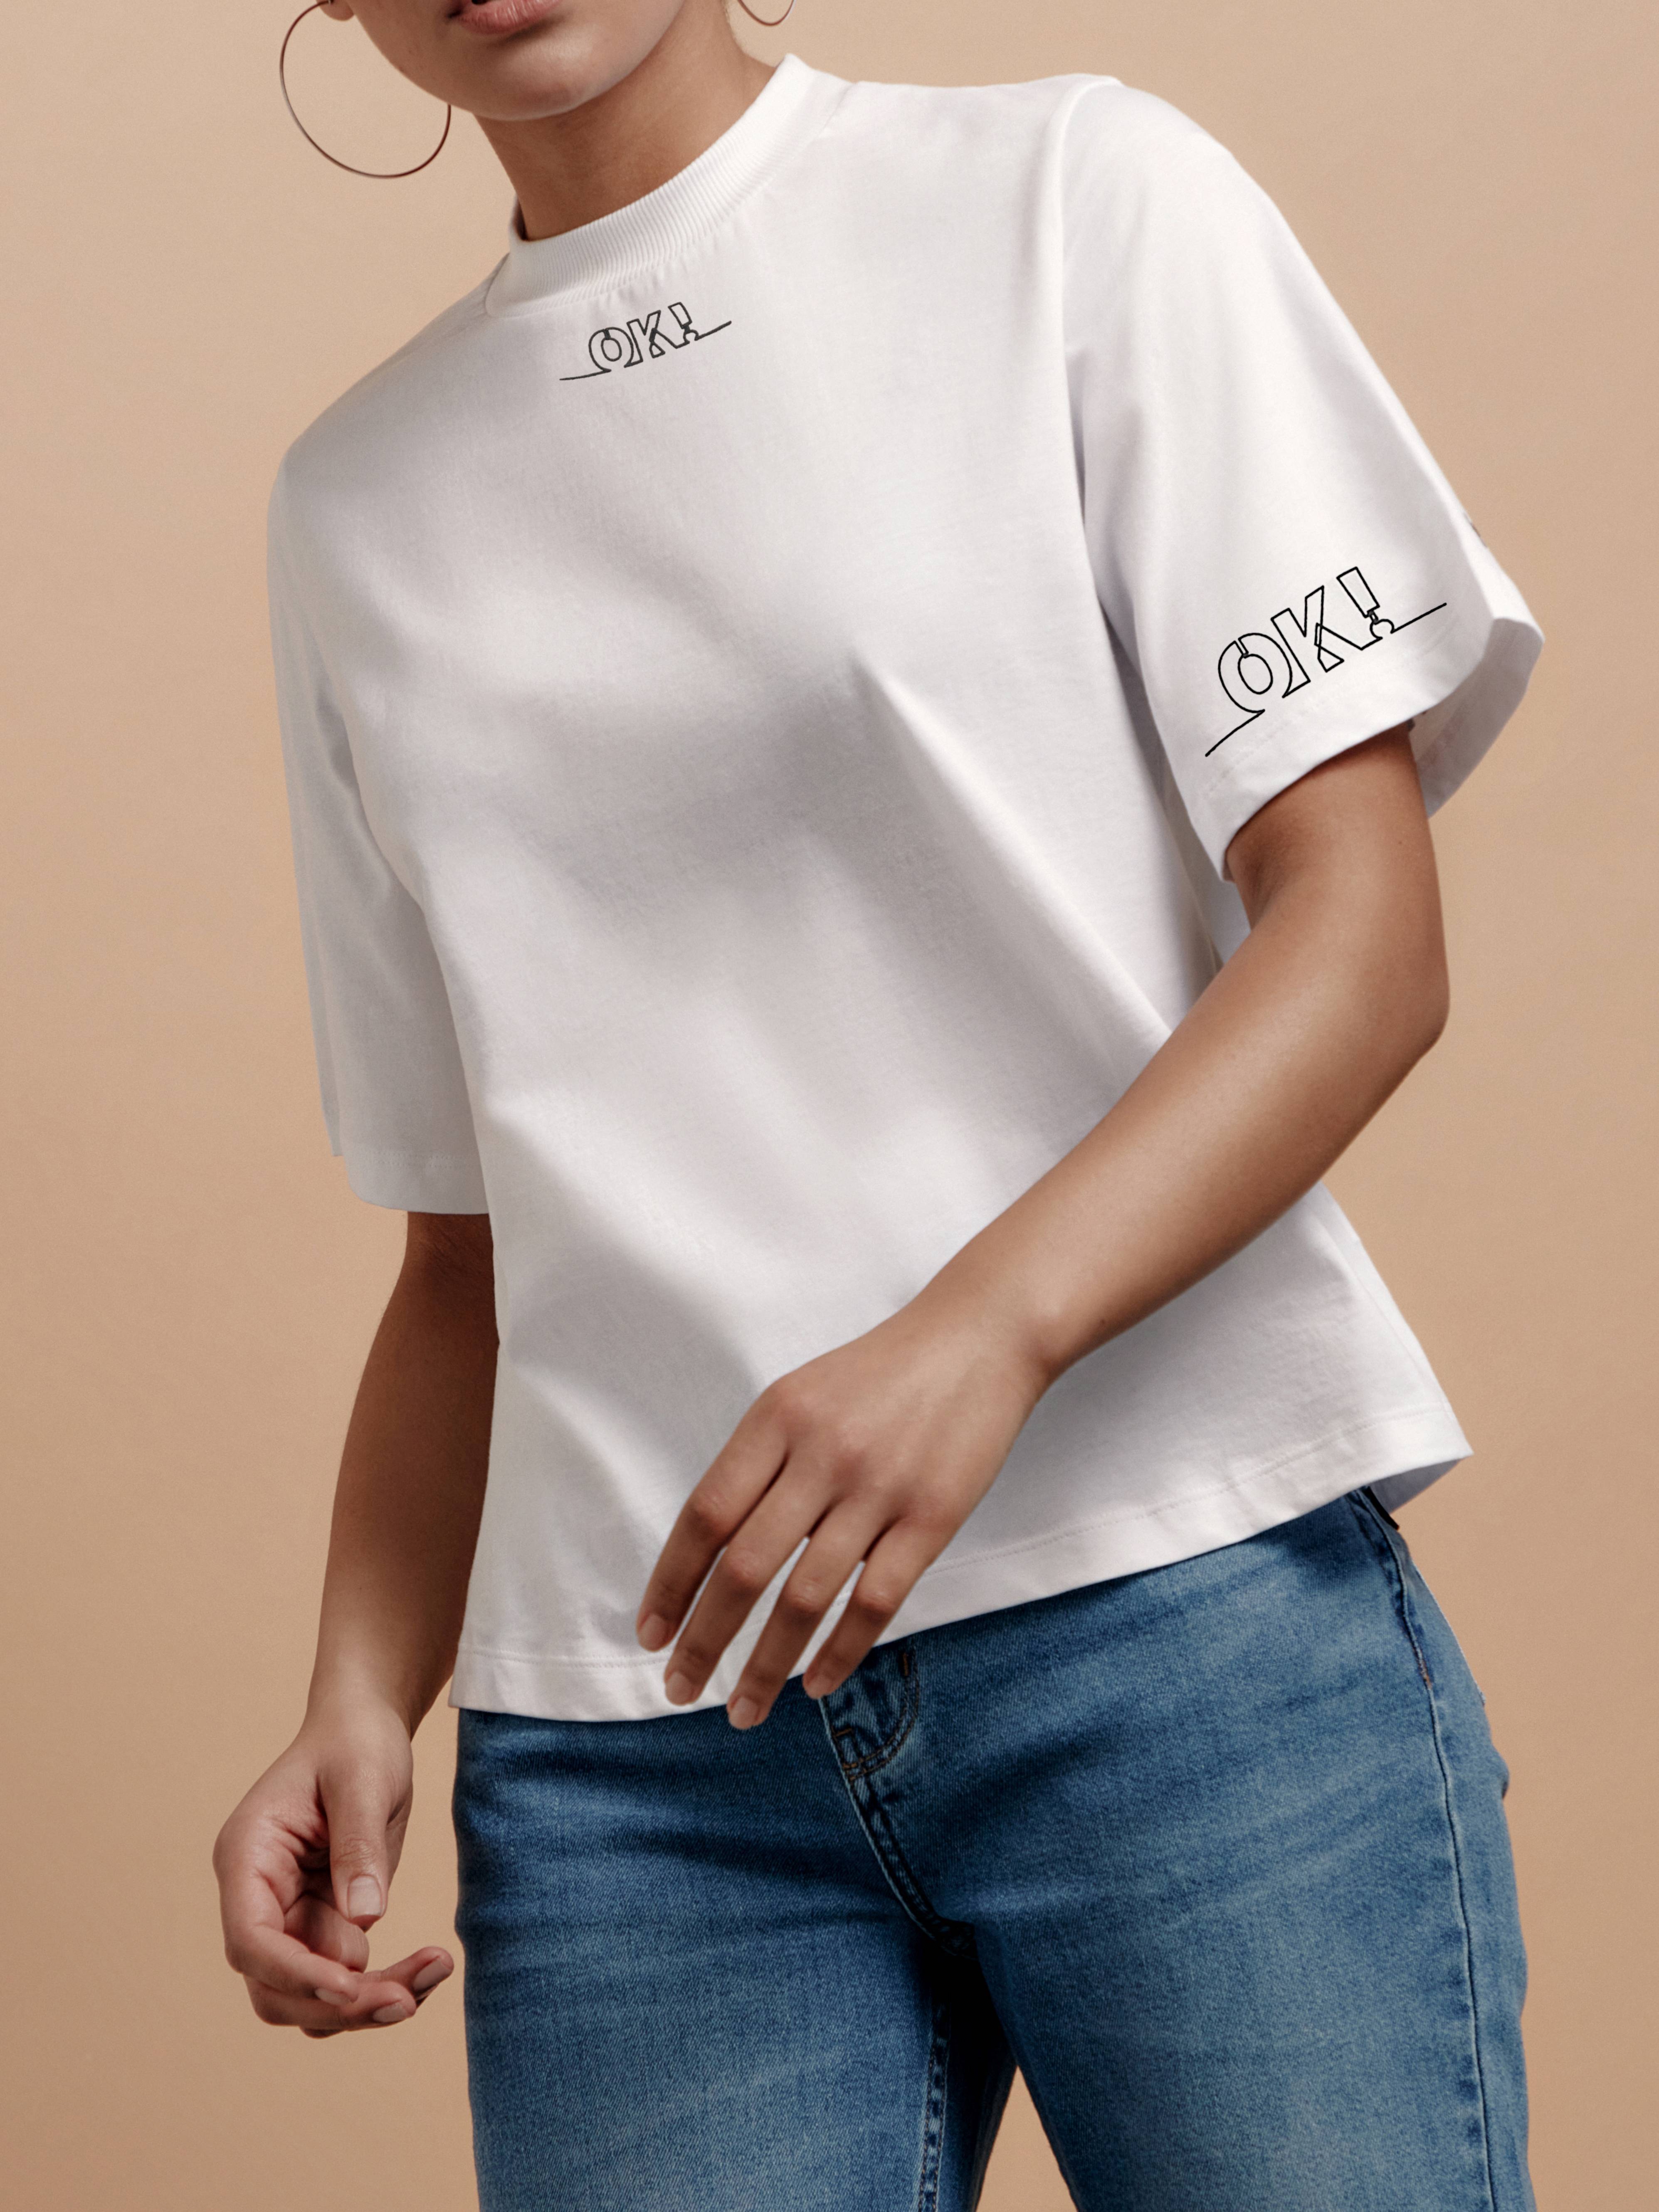 Oversize-футболка с рисунком «Ok» LD 1668 Conte ⭐️, цвет white, размер 170-84/xs - фото 1